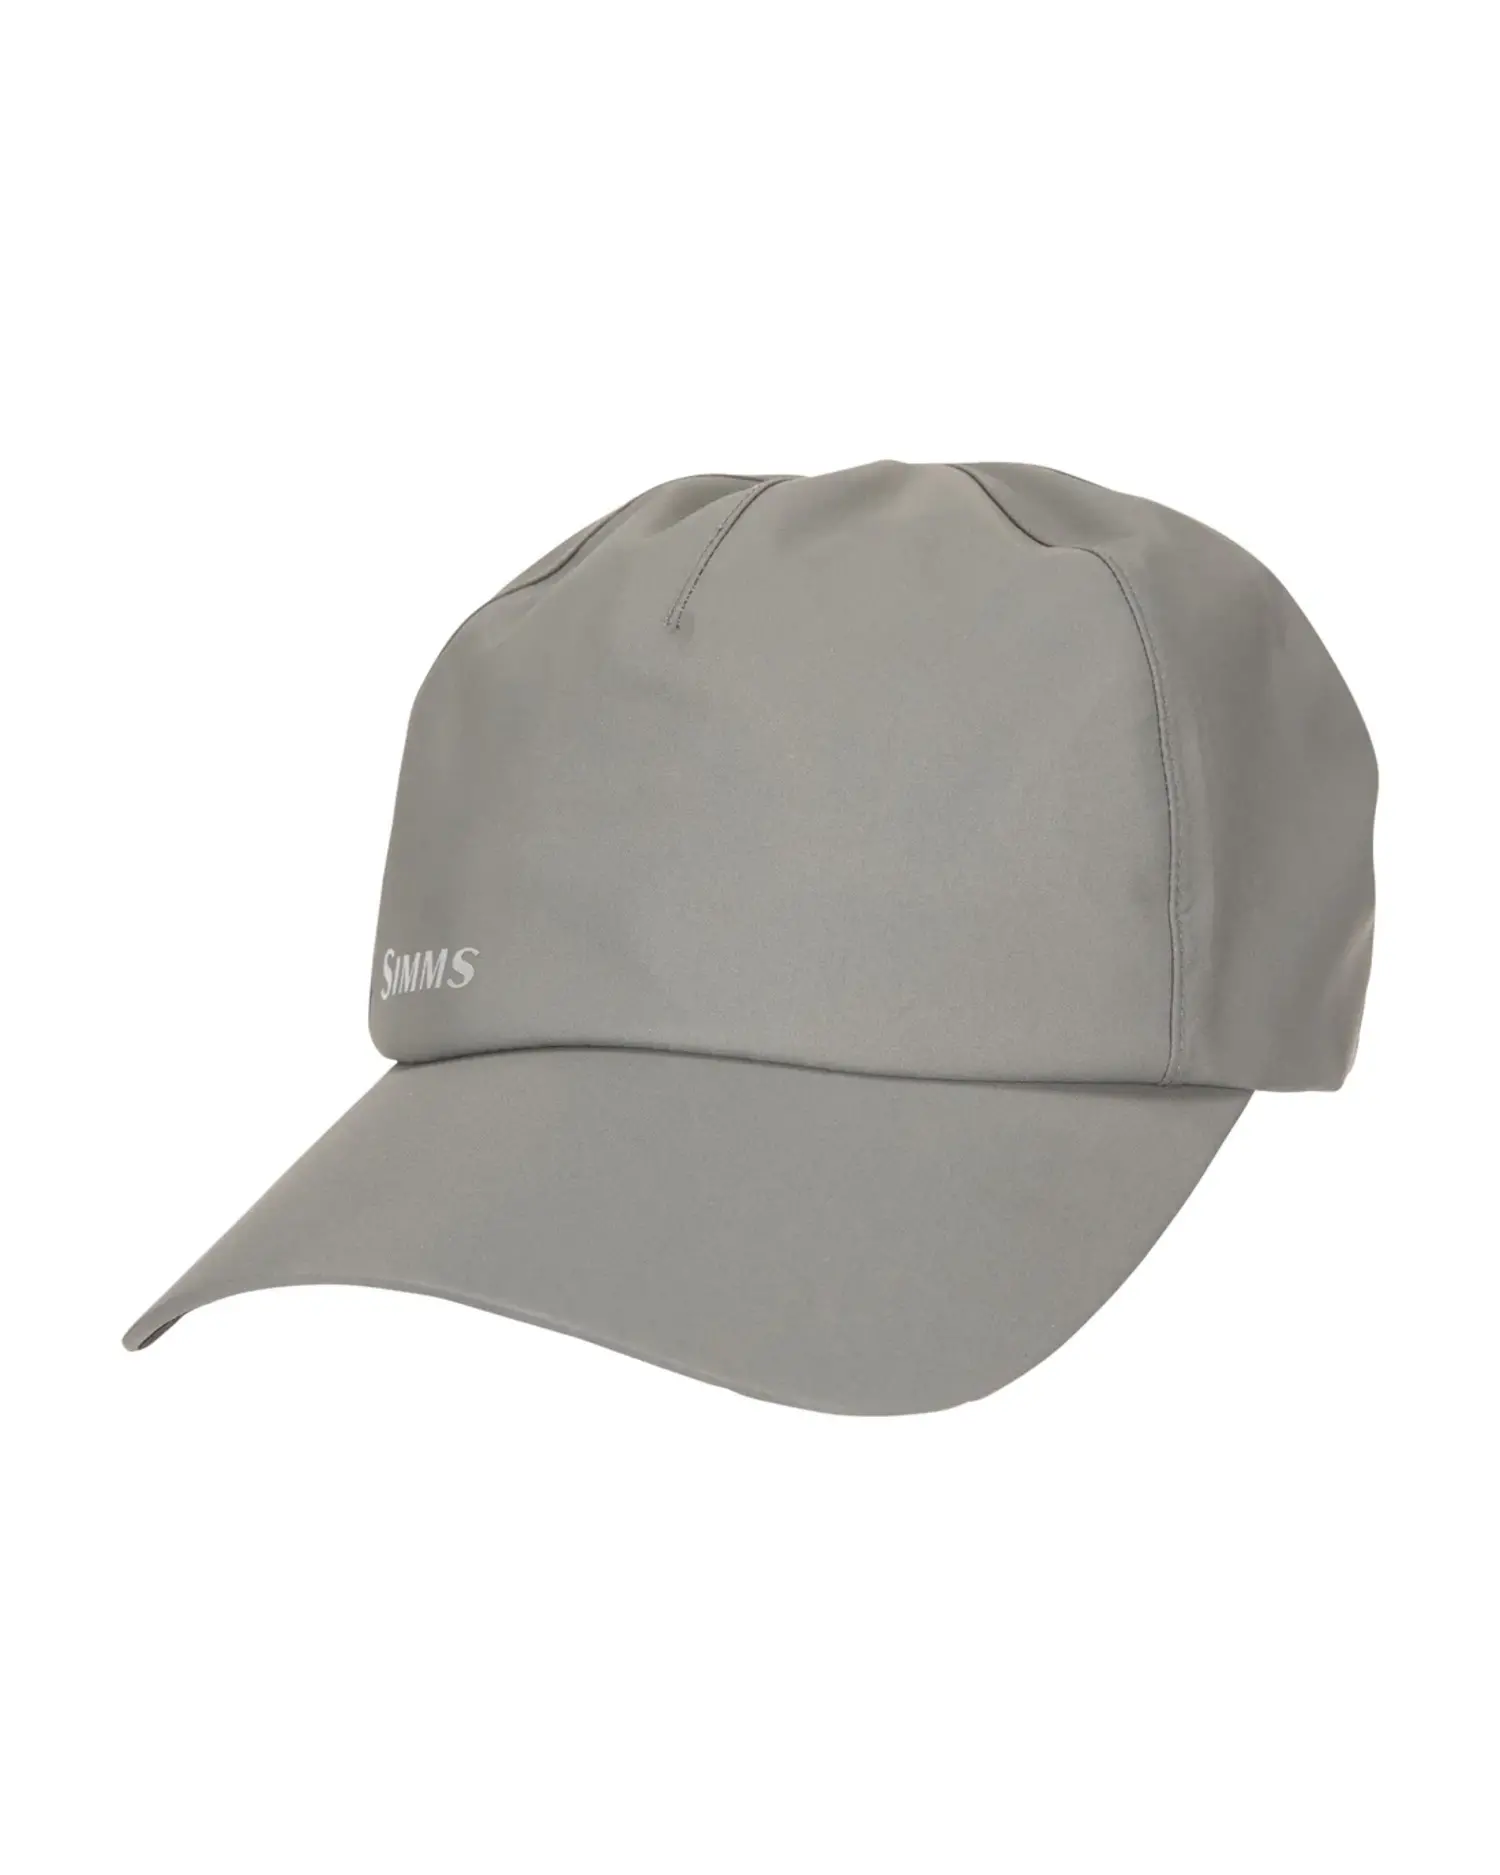 G.Loomis Waterproof-Breathable Fishing Hat